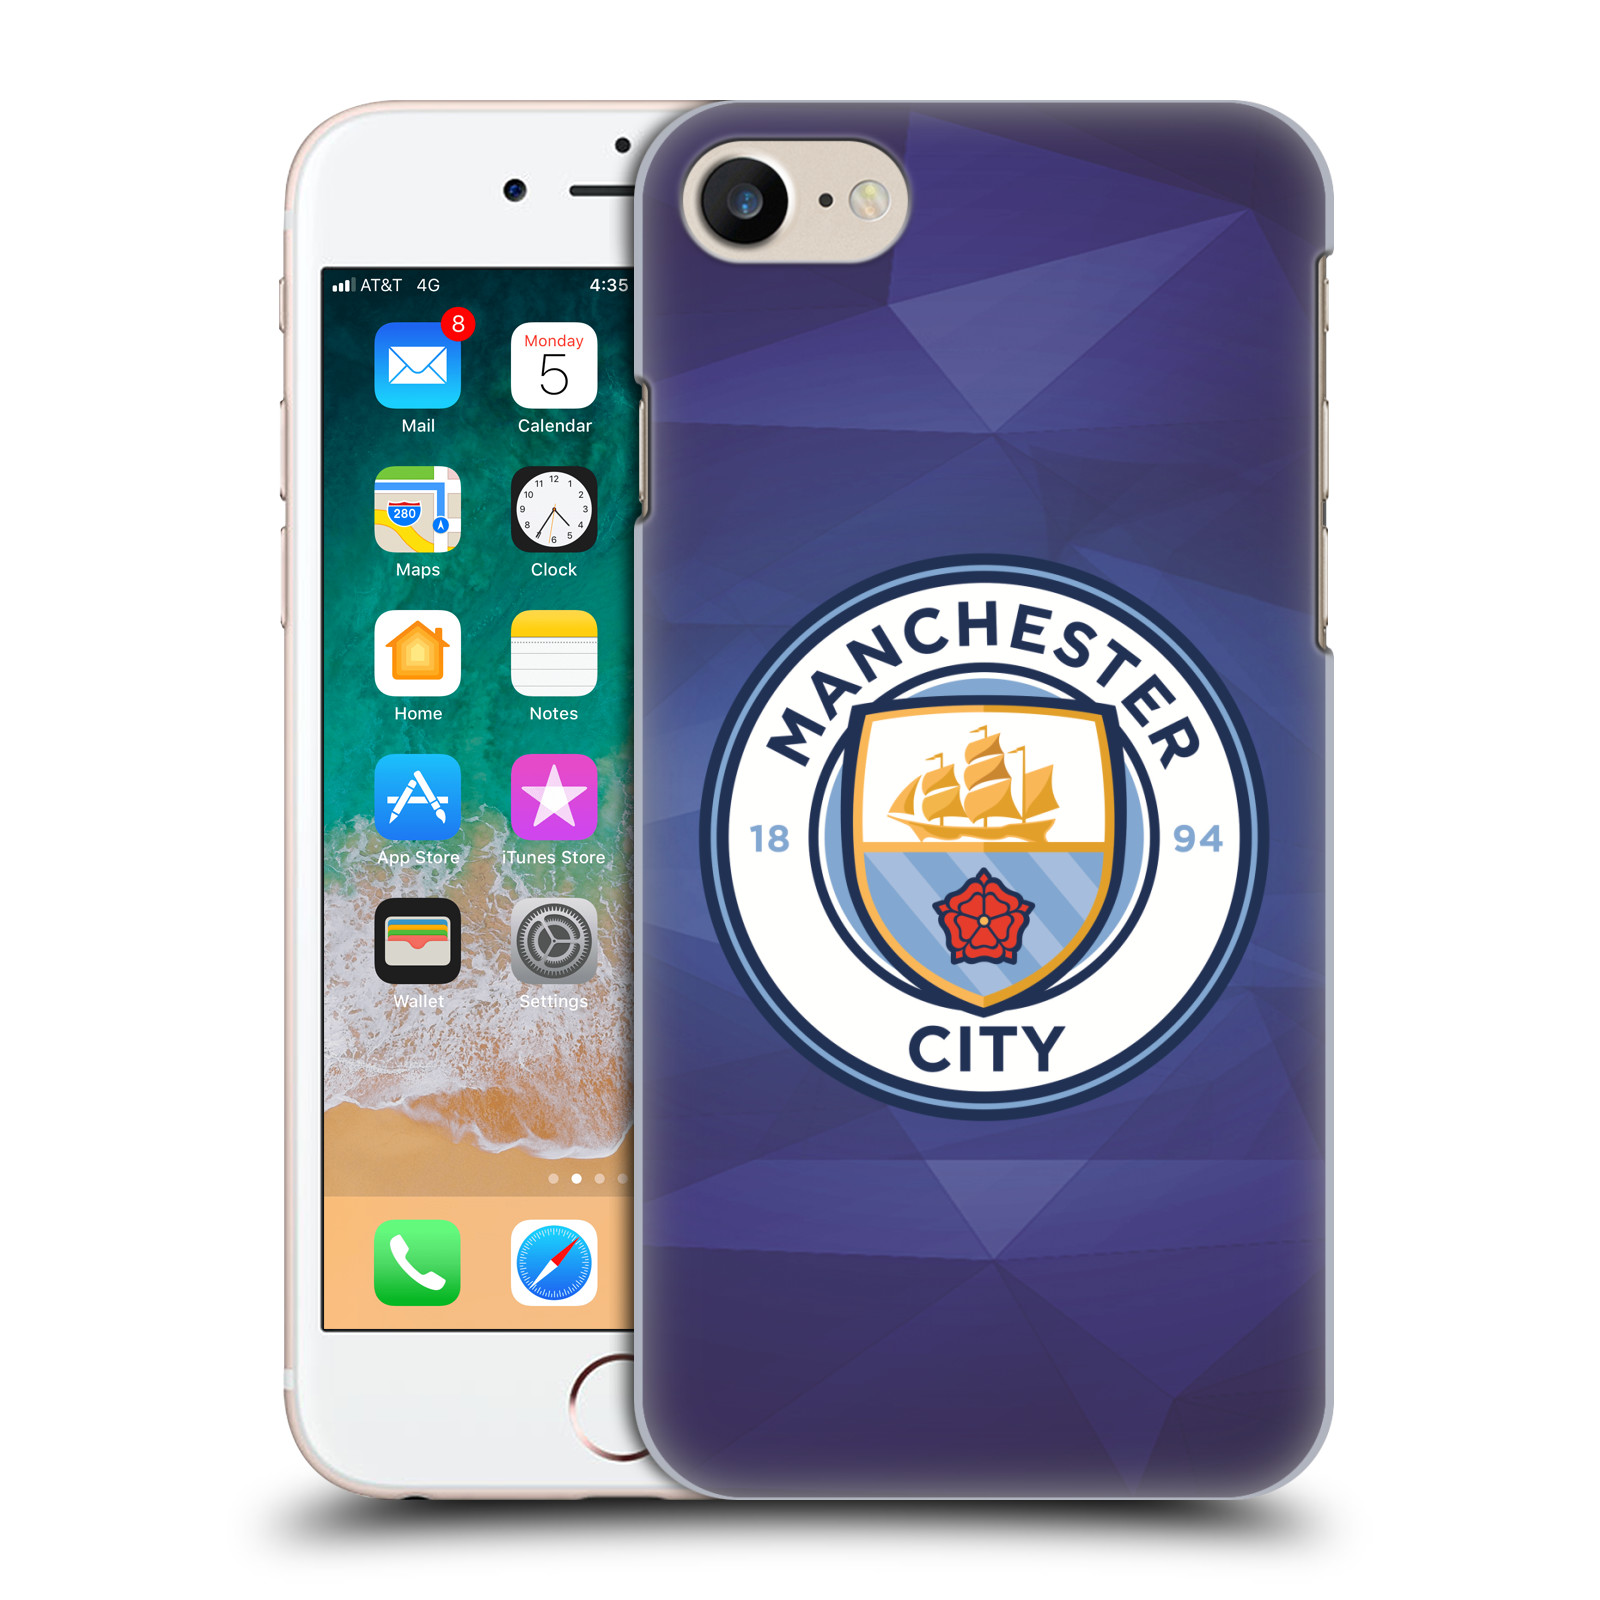 Plastové pouzdro na mobil Apple iPhone 7 HEAD CASE Manchester City FC - Modré nové logo (Plastový kryt či obal na mobilní telefon licencovaným motivem Manchester City FC pro Apple iPhone 7)